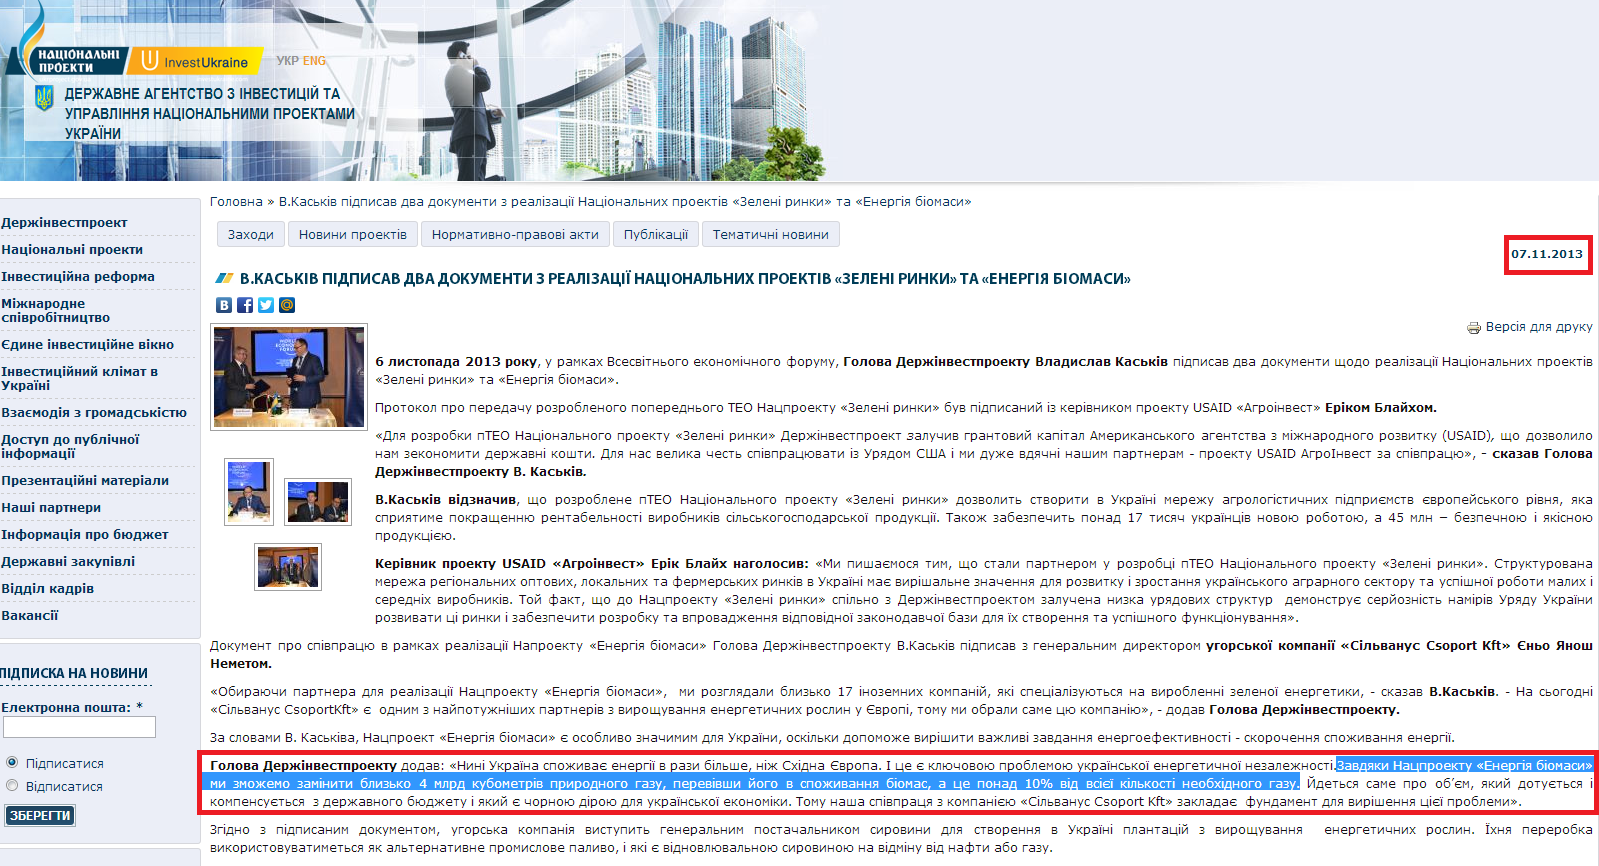 http://www.ukrproject.gov.ua/news/vkaskiv-pidpisav-dva-dokumenti-z-realizatsii-natsionalnikh-proektiv-zeleni-rinki-ta-energiya-bi